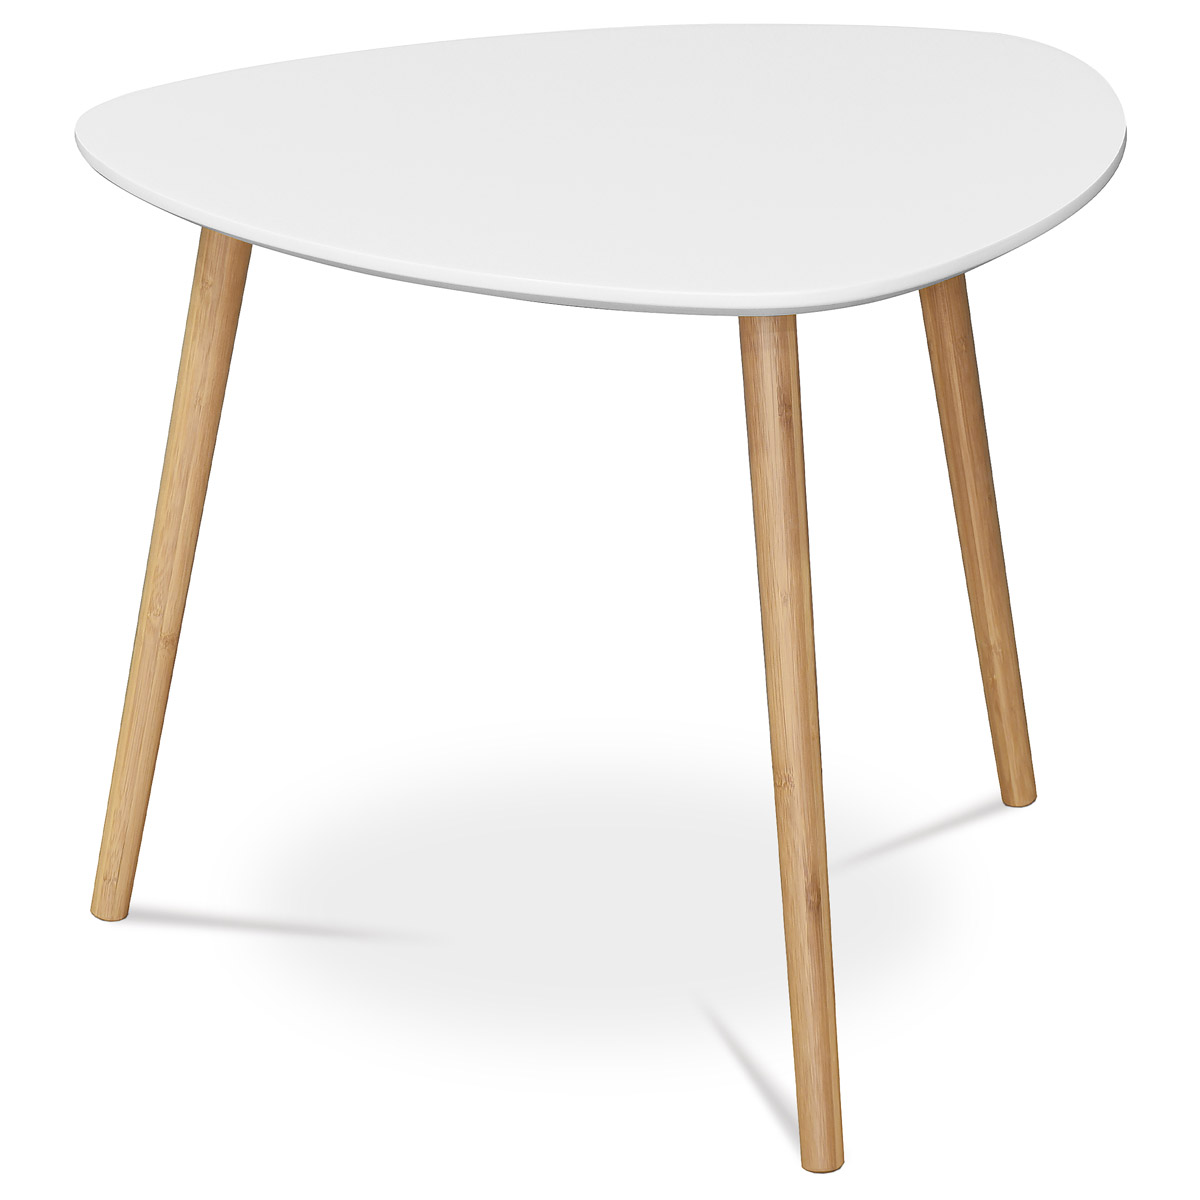 Stůl konferenční 55x55x45 cm,  MDF bílá deska,  nohy bambus přírodní odstín